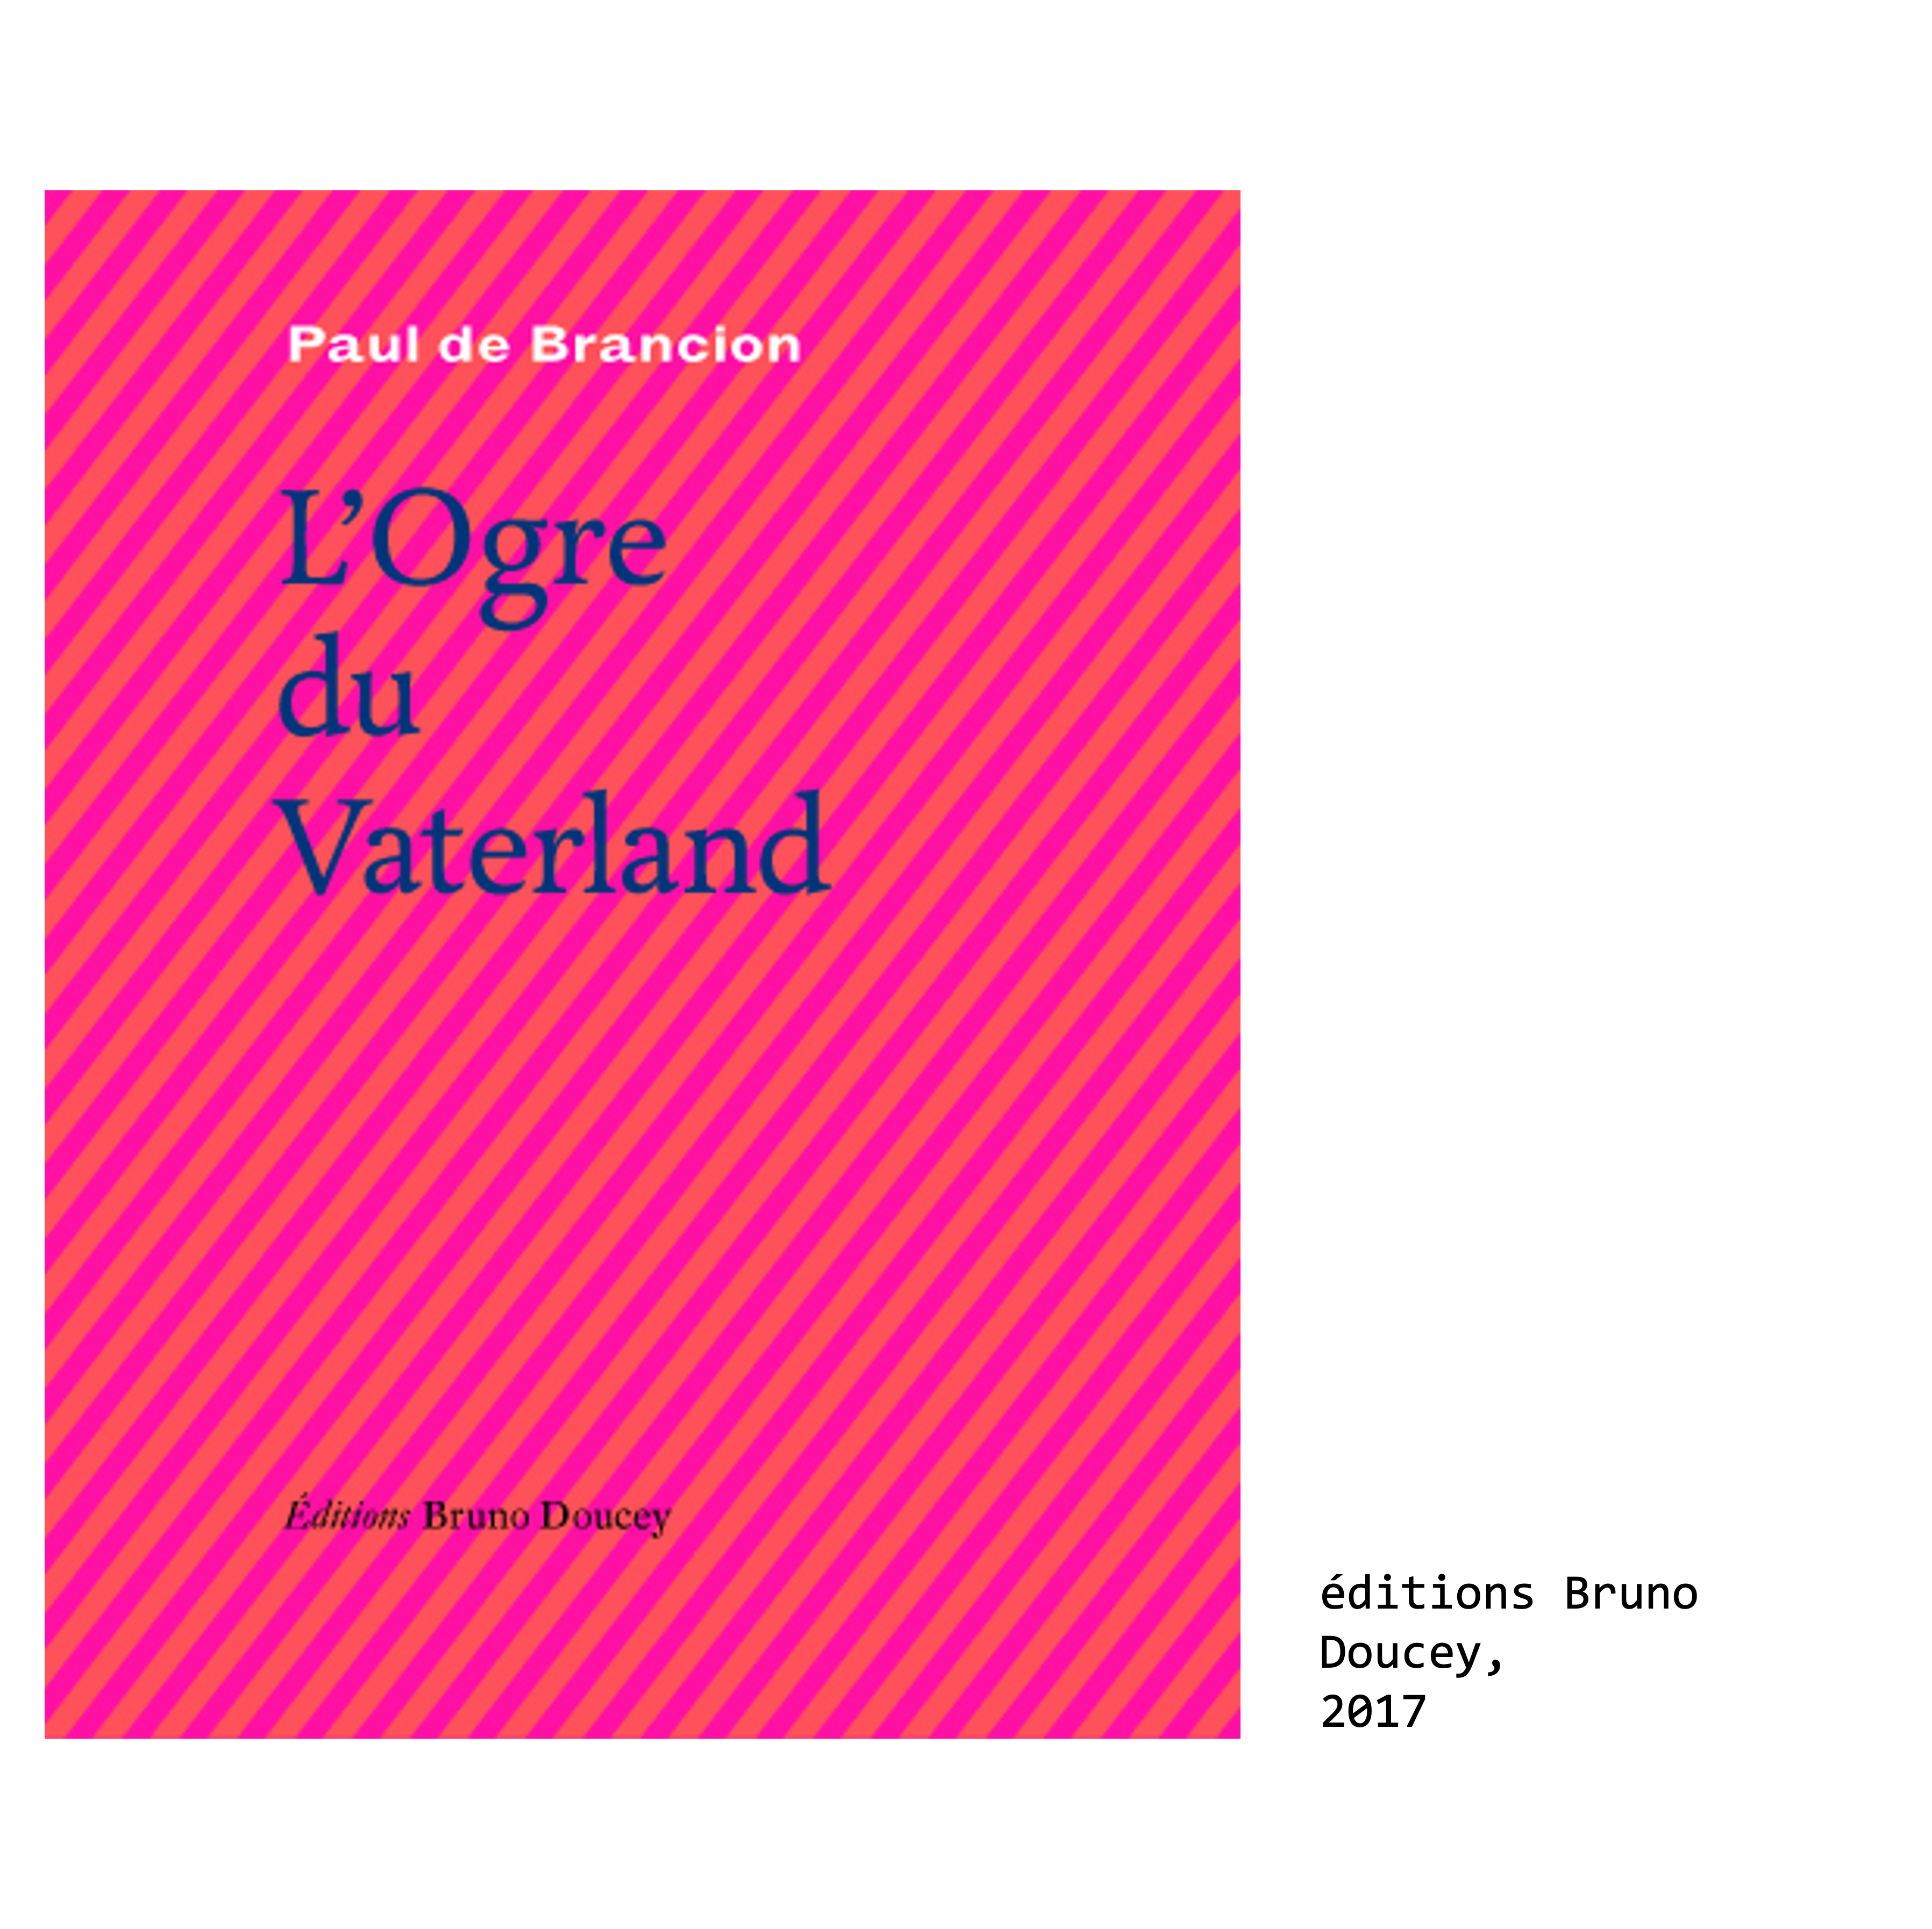 Couverture du livre de Paul de Brancion, écrivain et poète : L’Ogre du Vaterland, éditions Bruno Doucey, 2017